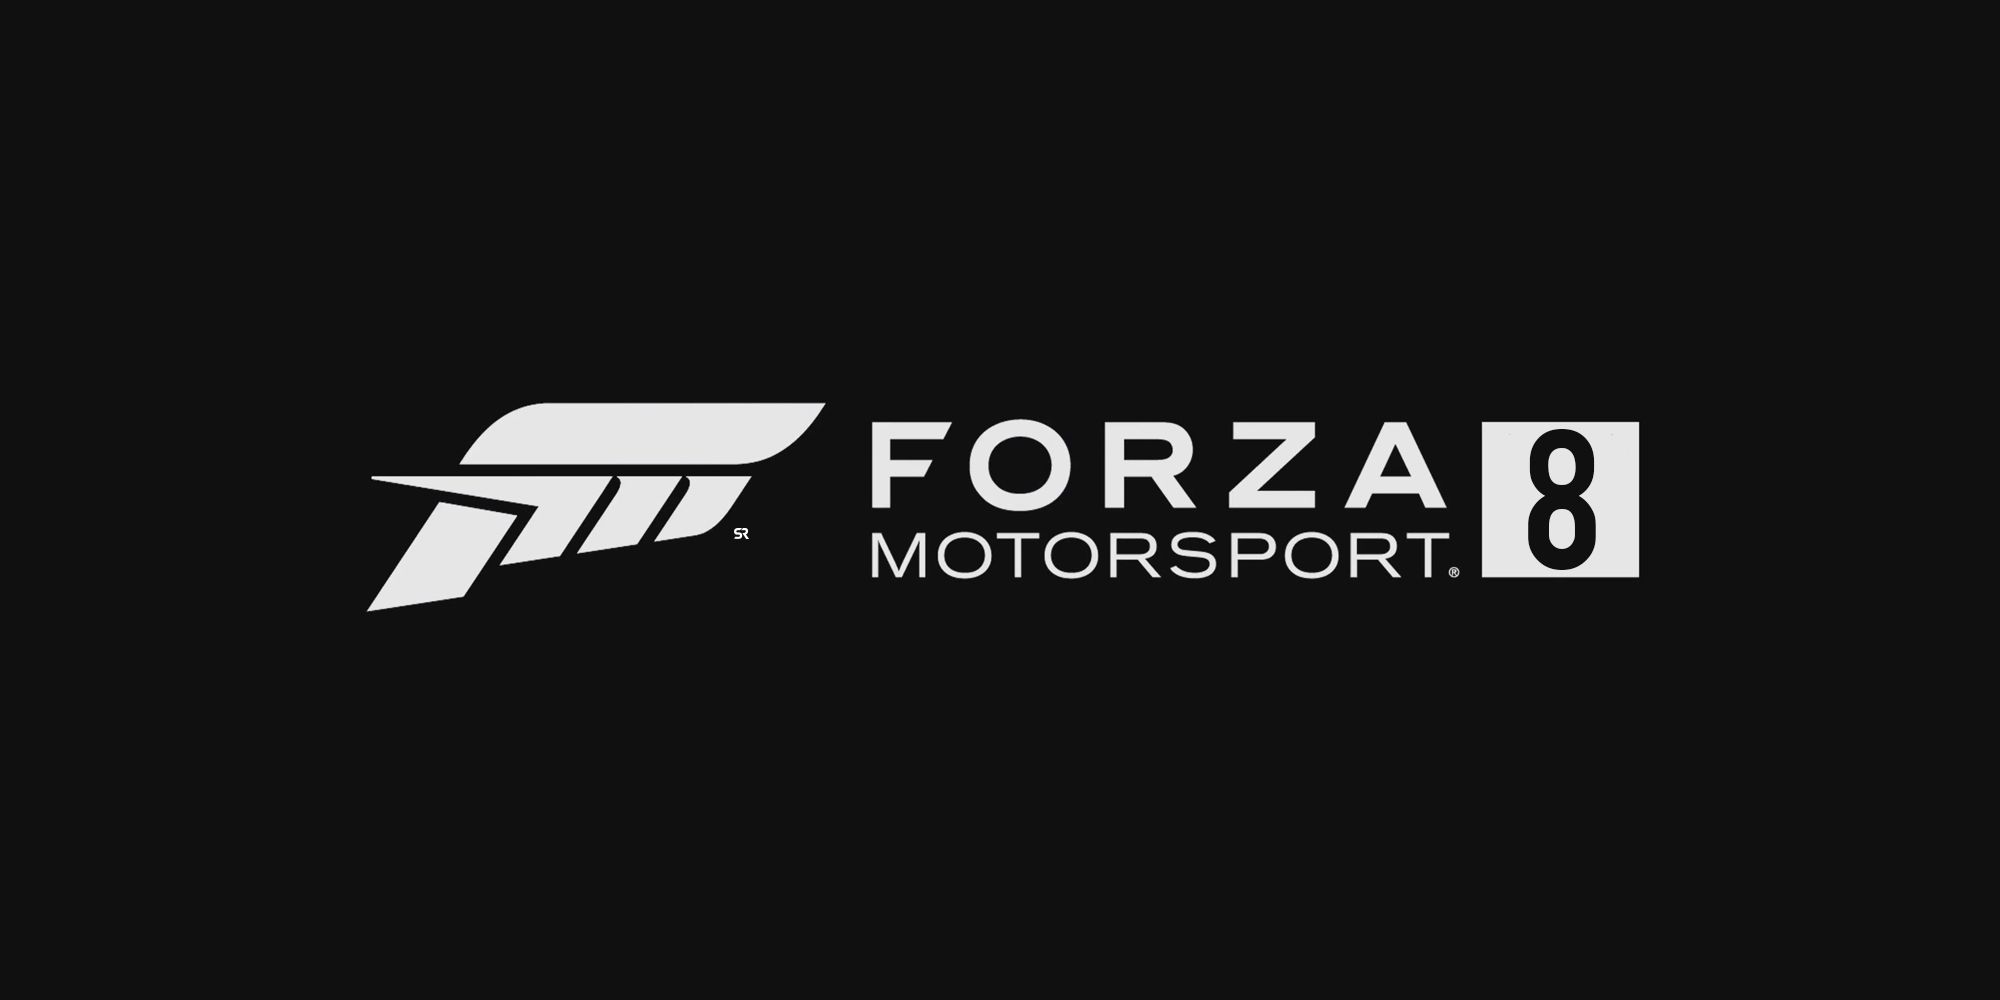 forza motorsport 8 release